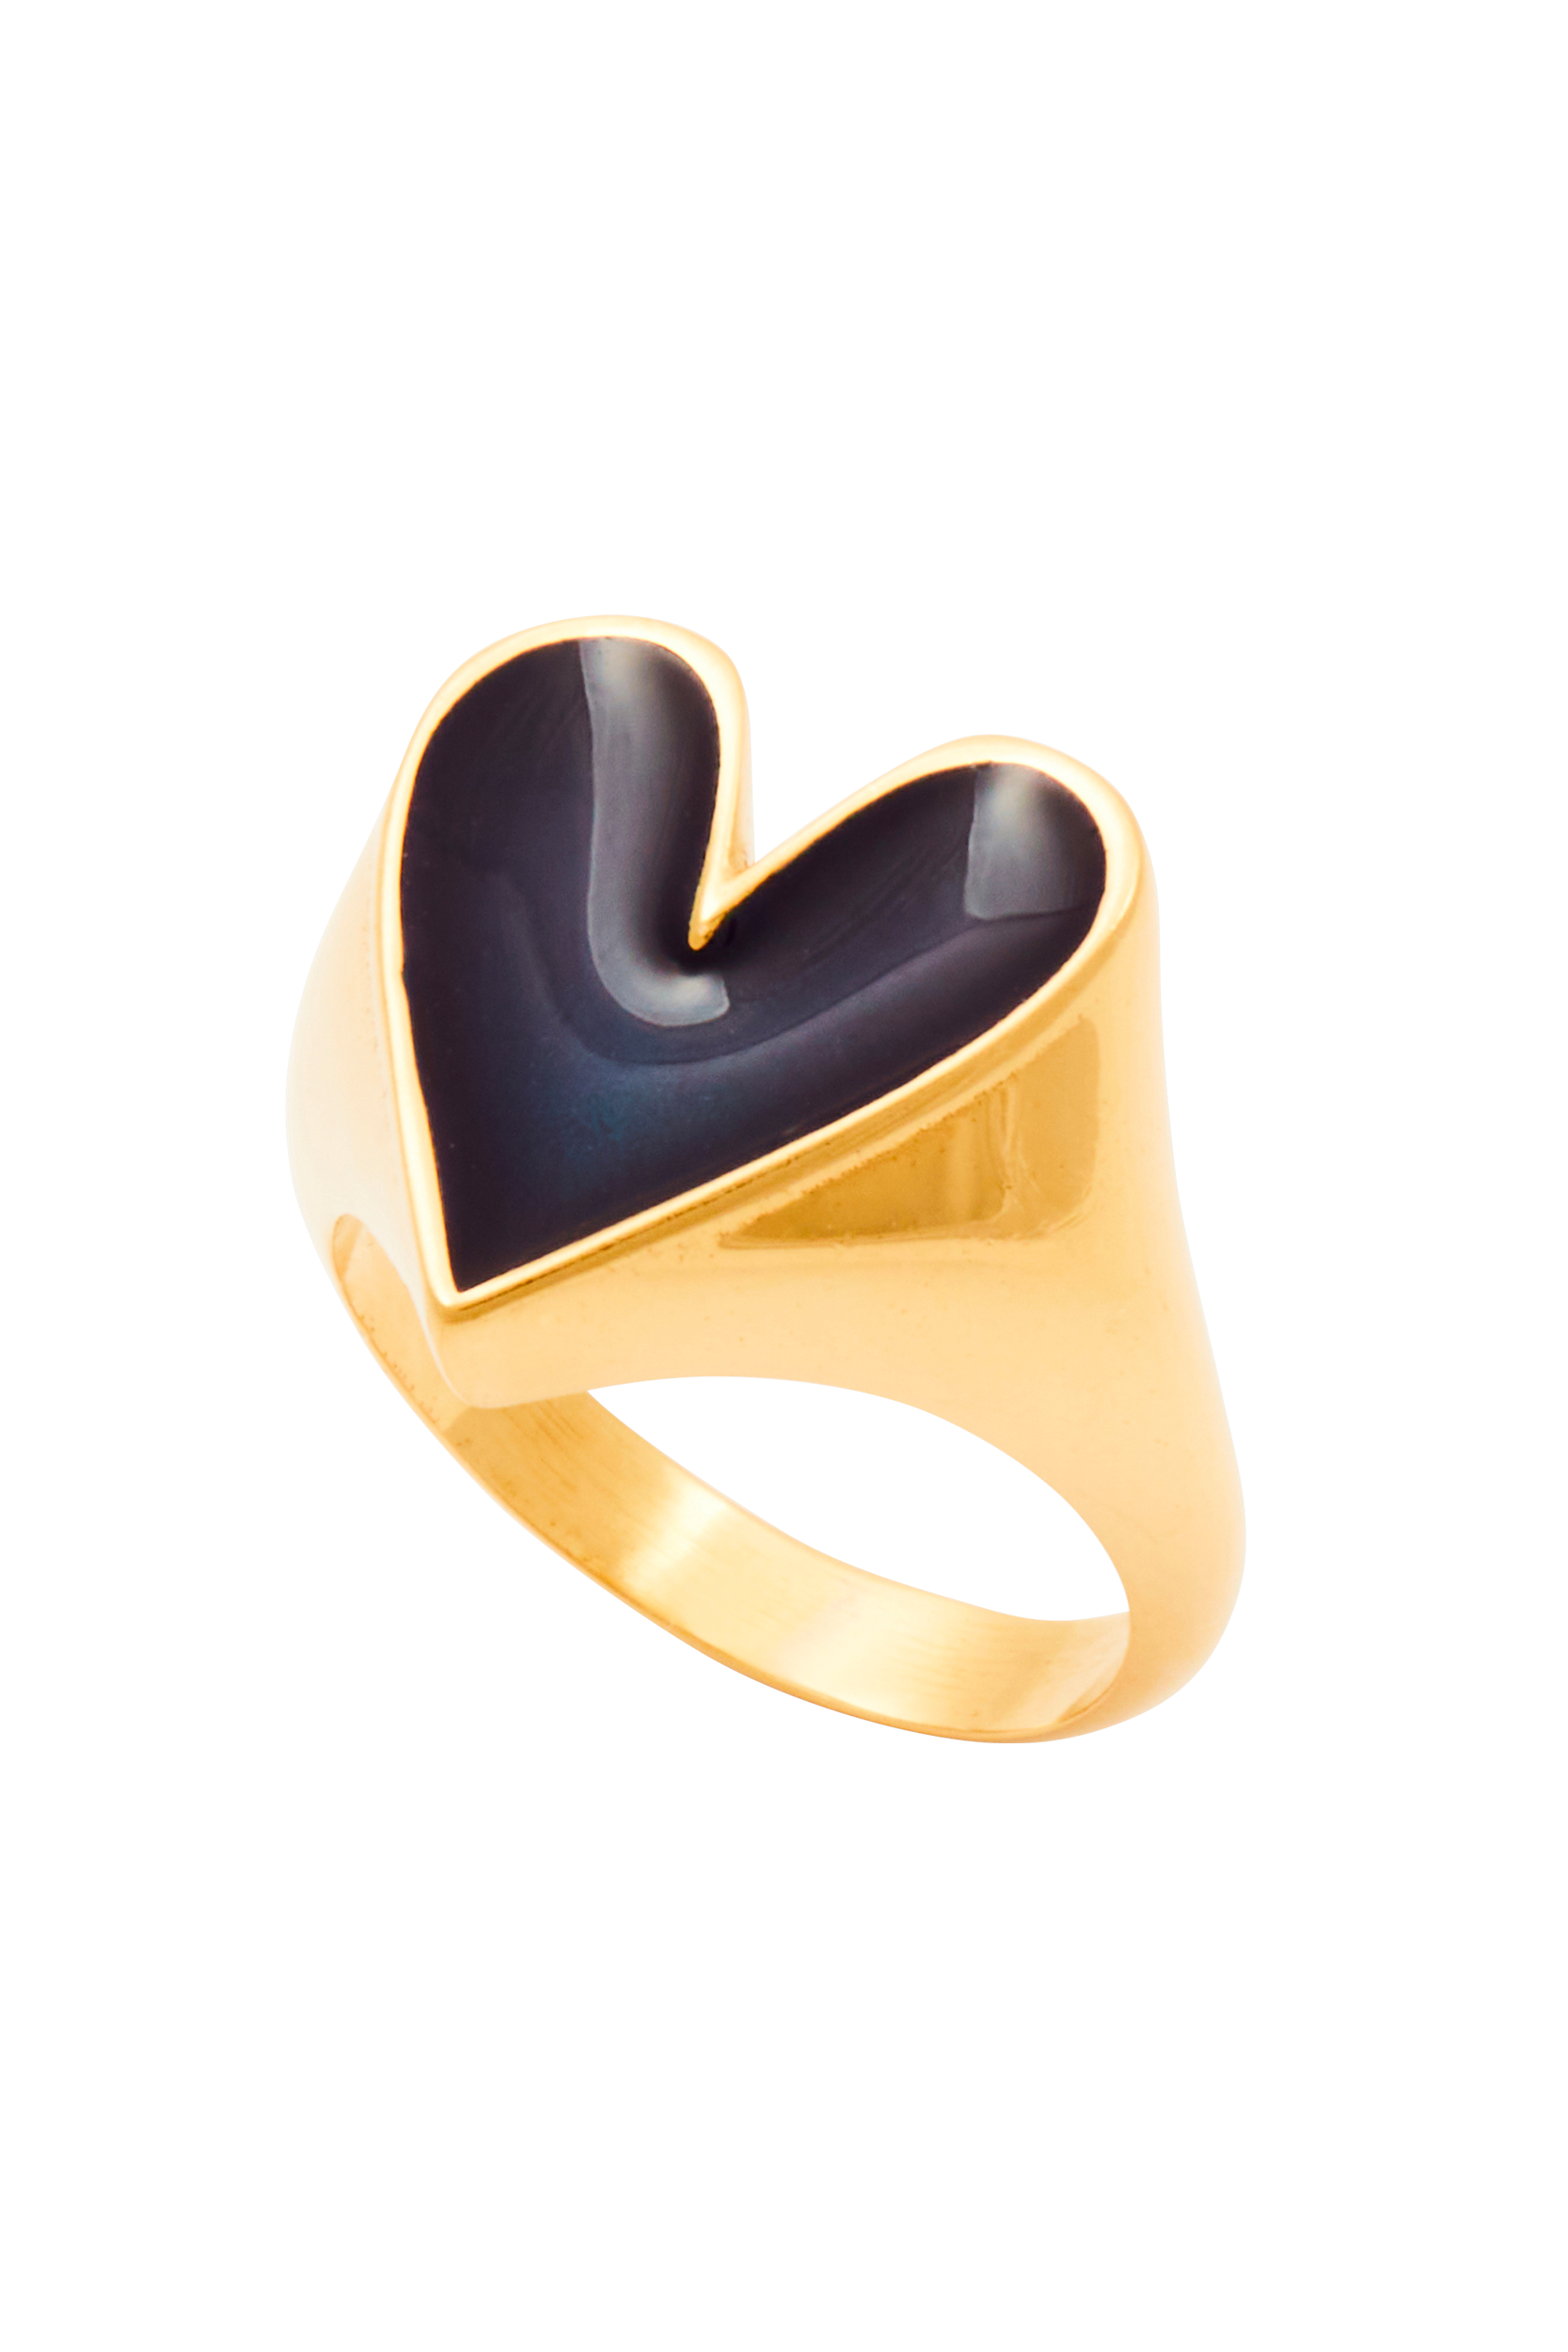 Faustine golden navy heart ring